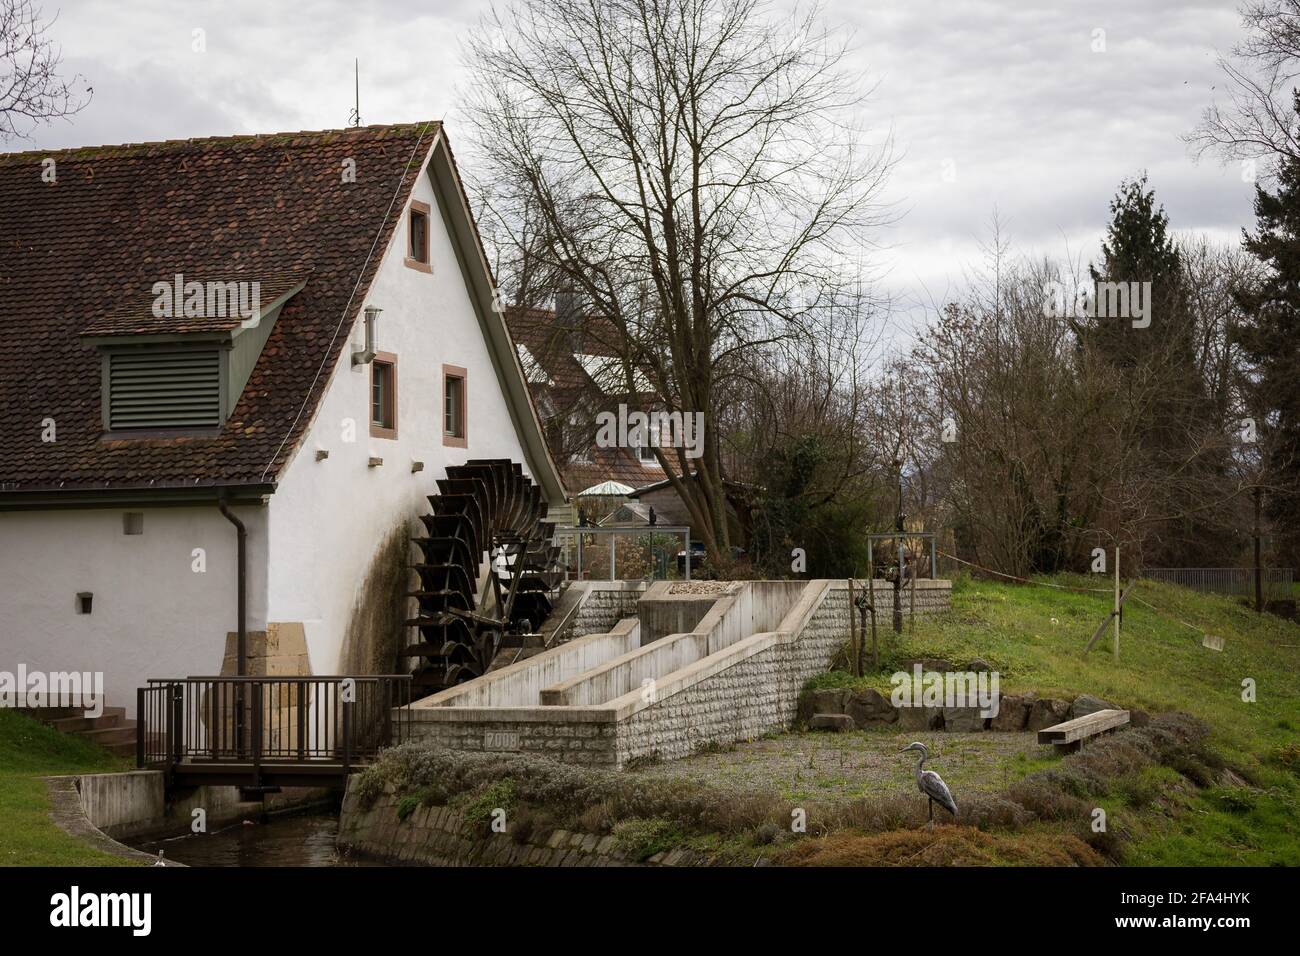 Umkirch, Allemagne - 24 décembre 2014 : vue du matin d'une maison avec moulin à eau dans la ville d'Umkirch, Allemagne. Banque D'Images